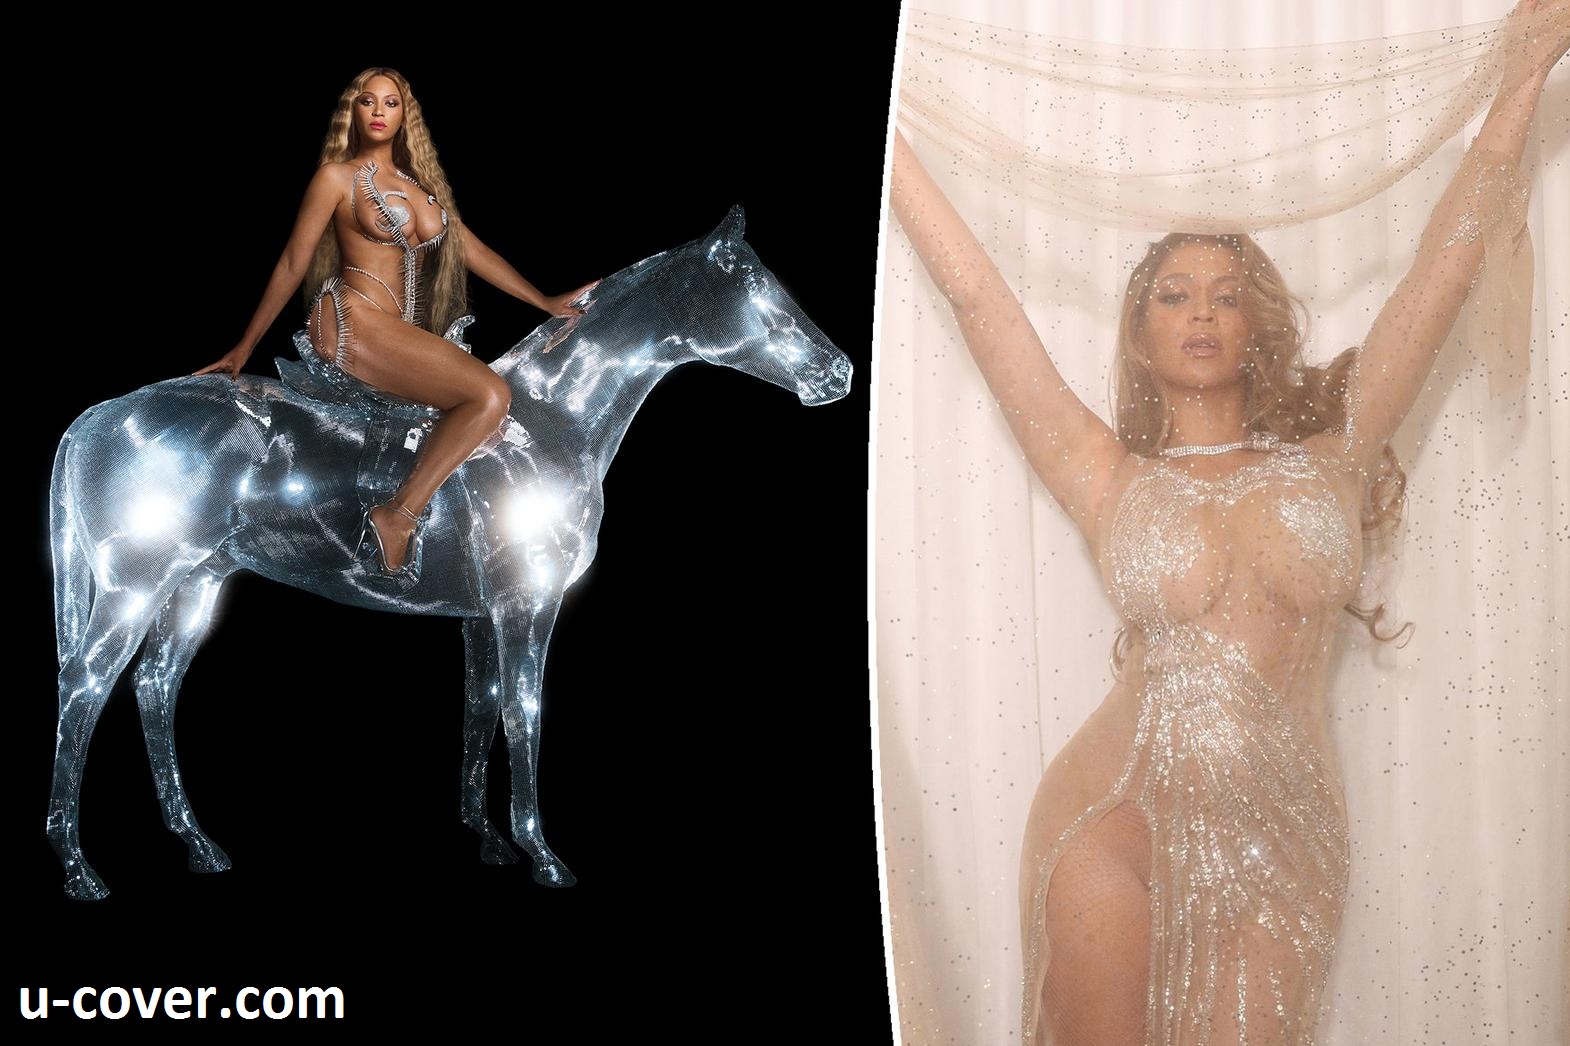 ‘Renaissance’ review: Beyoncé gets filthy on the dance album of 2022